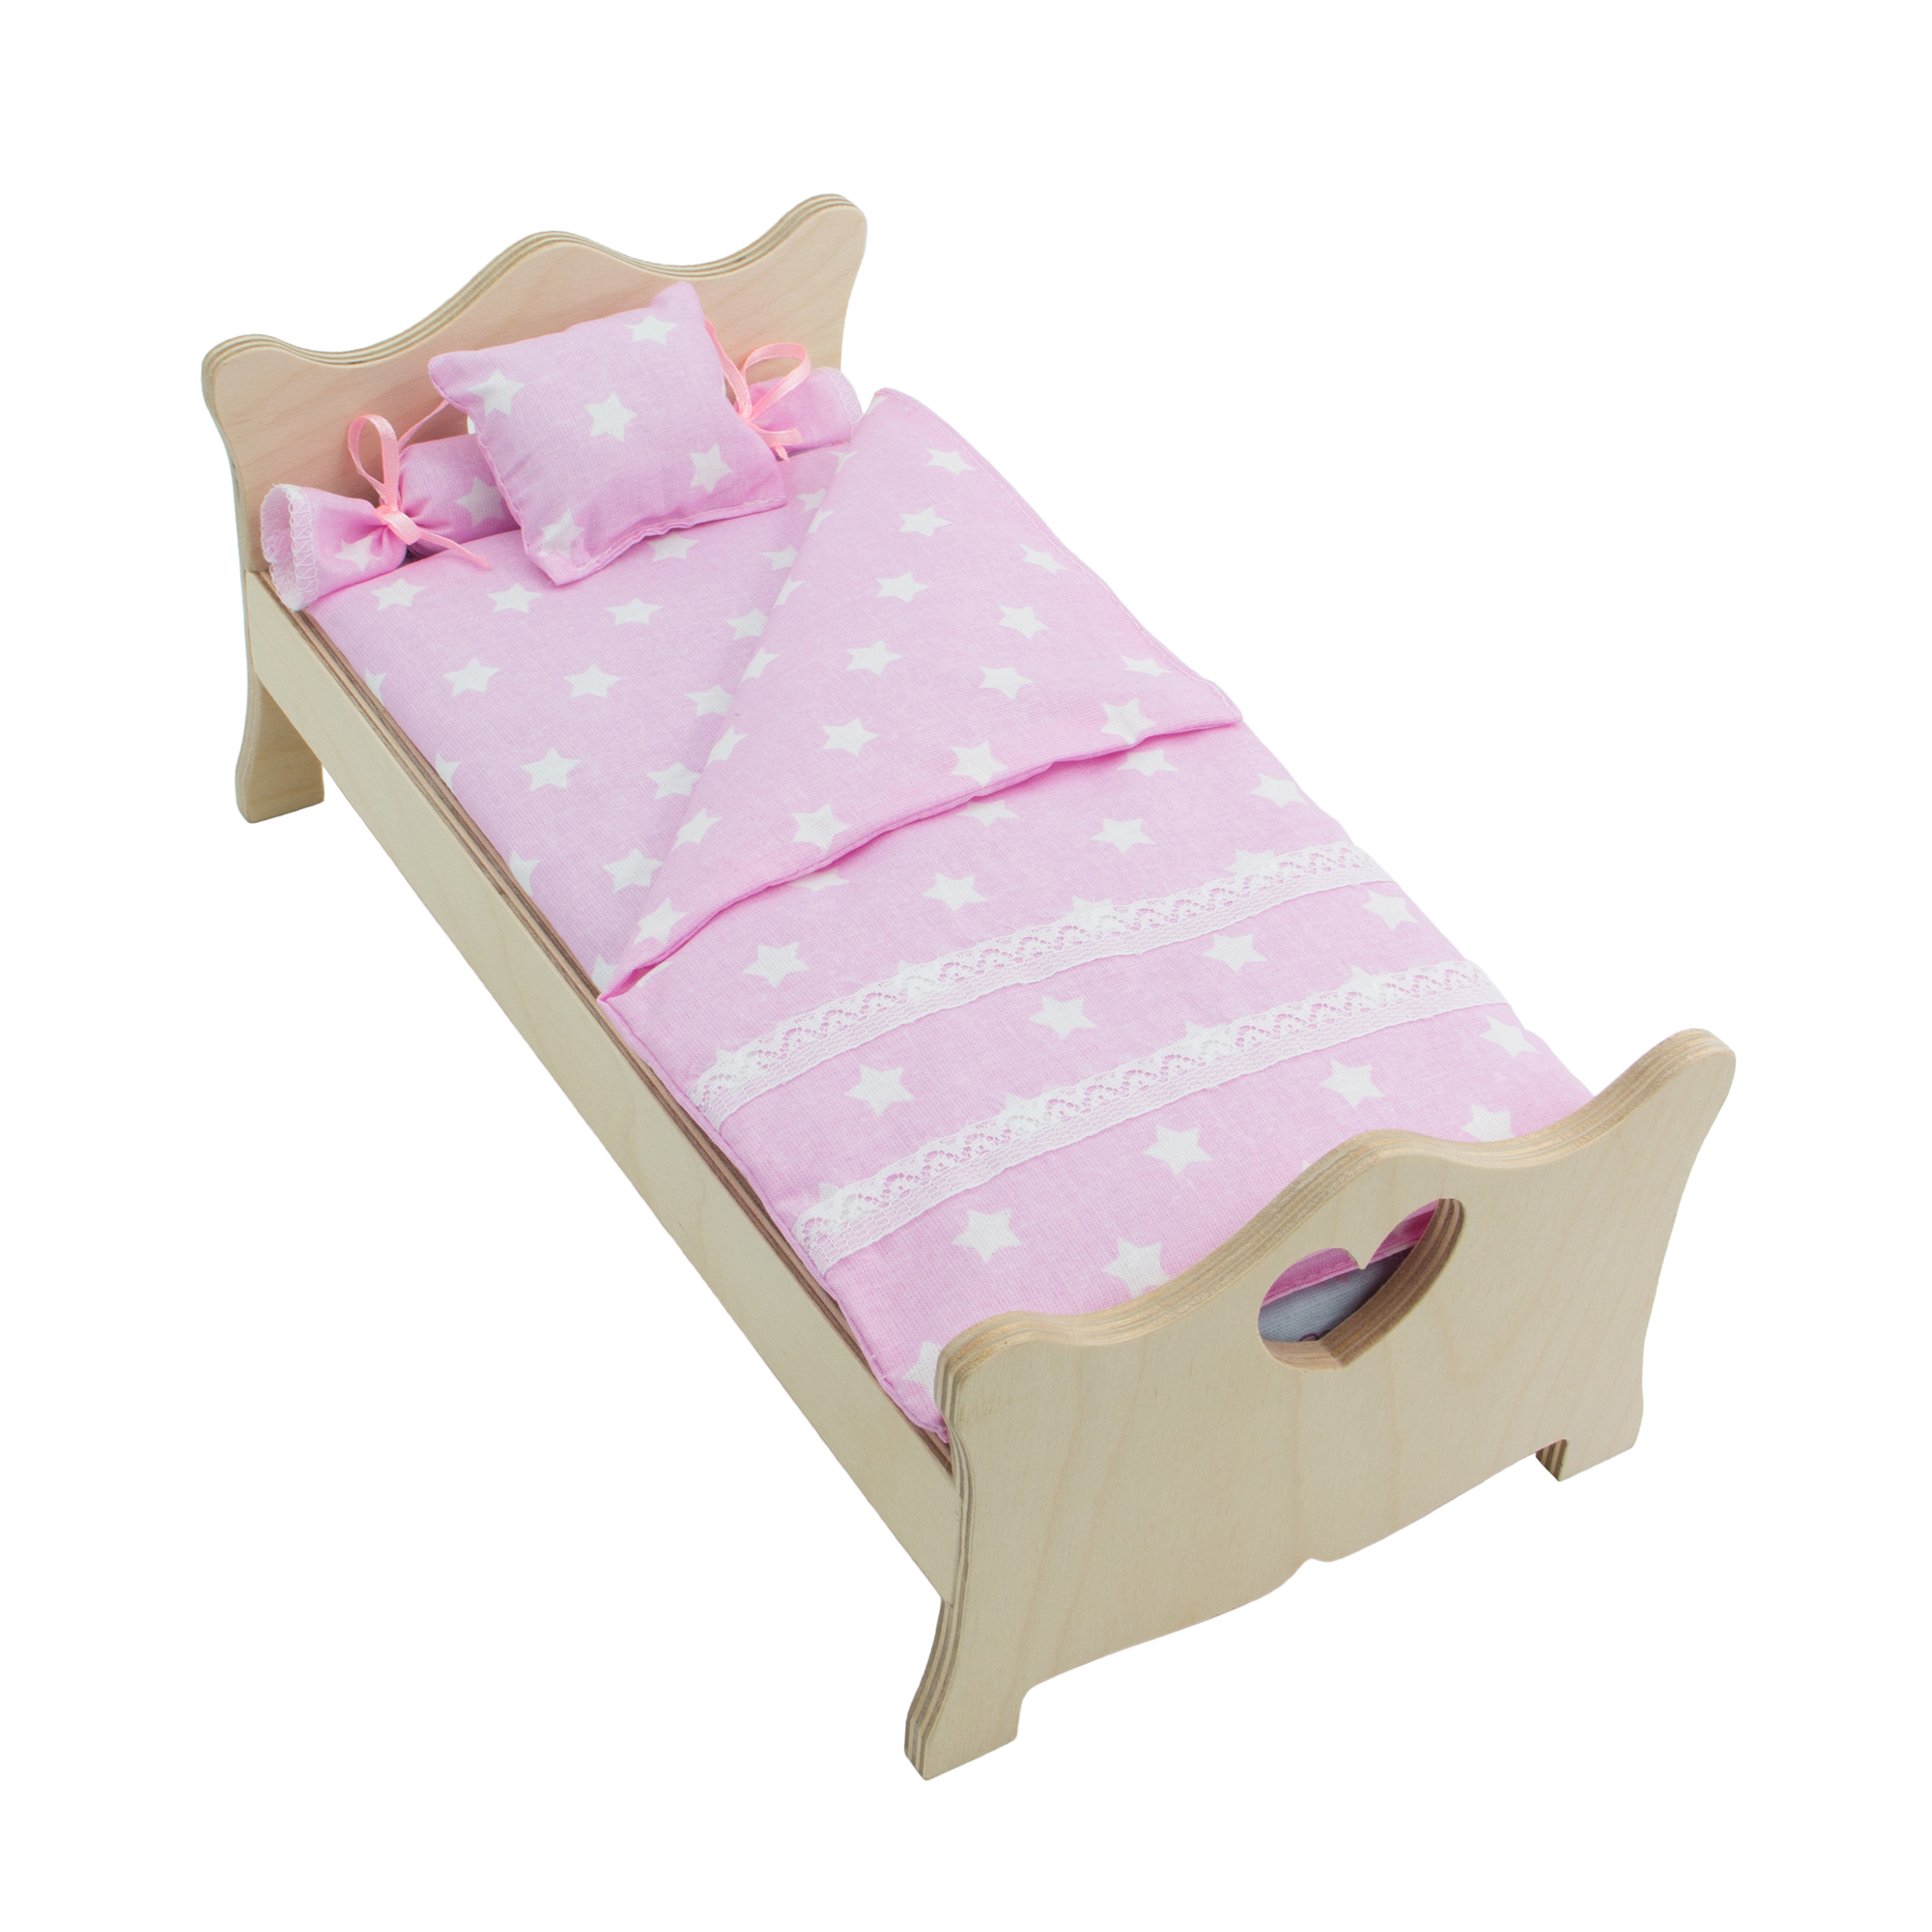 Комлпект постельного белья Модница для куклы 29 см светло-розовый 2002светло-розовый - фото 9